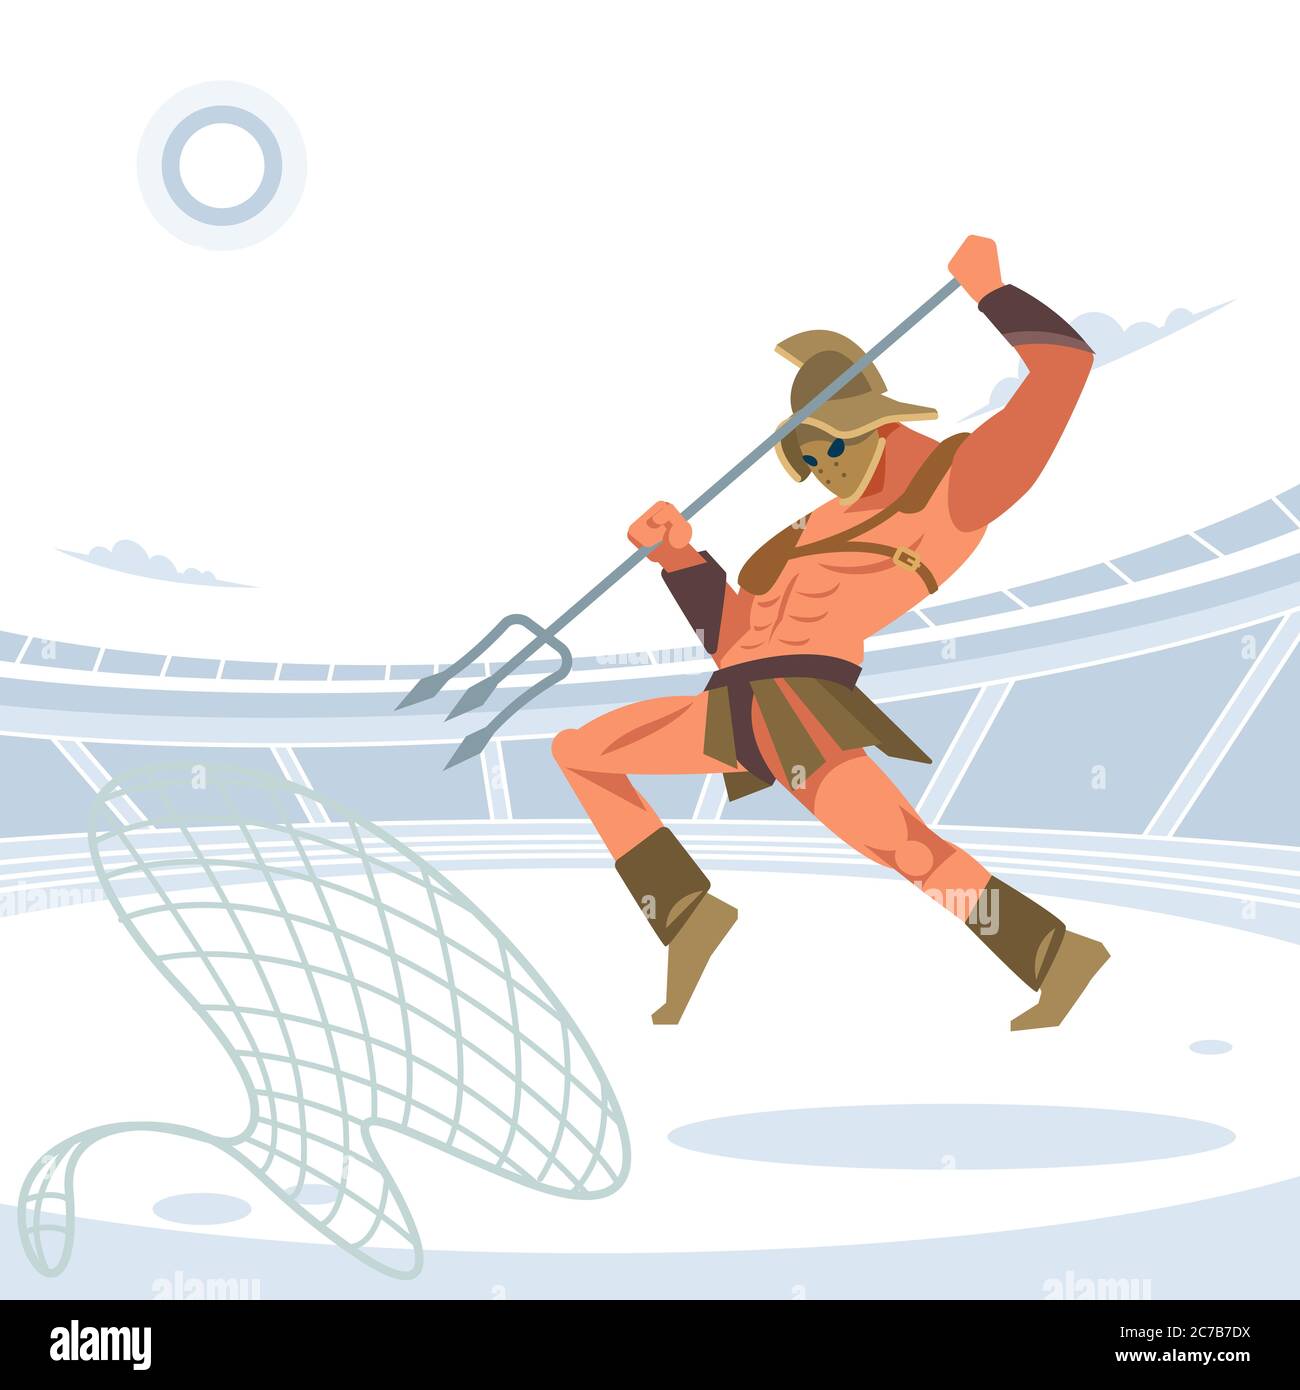 Krieger-Rentner Gladiator in der Arena mit einem Gitter und einem Dreizack springt auf den gefangenen Feind. Vektor-isolierte Illustration. Flacher Cartoon-Stil Stock Vektor